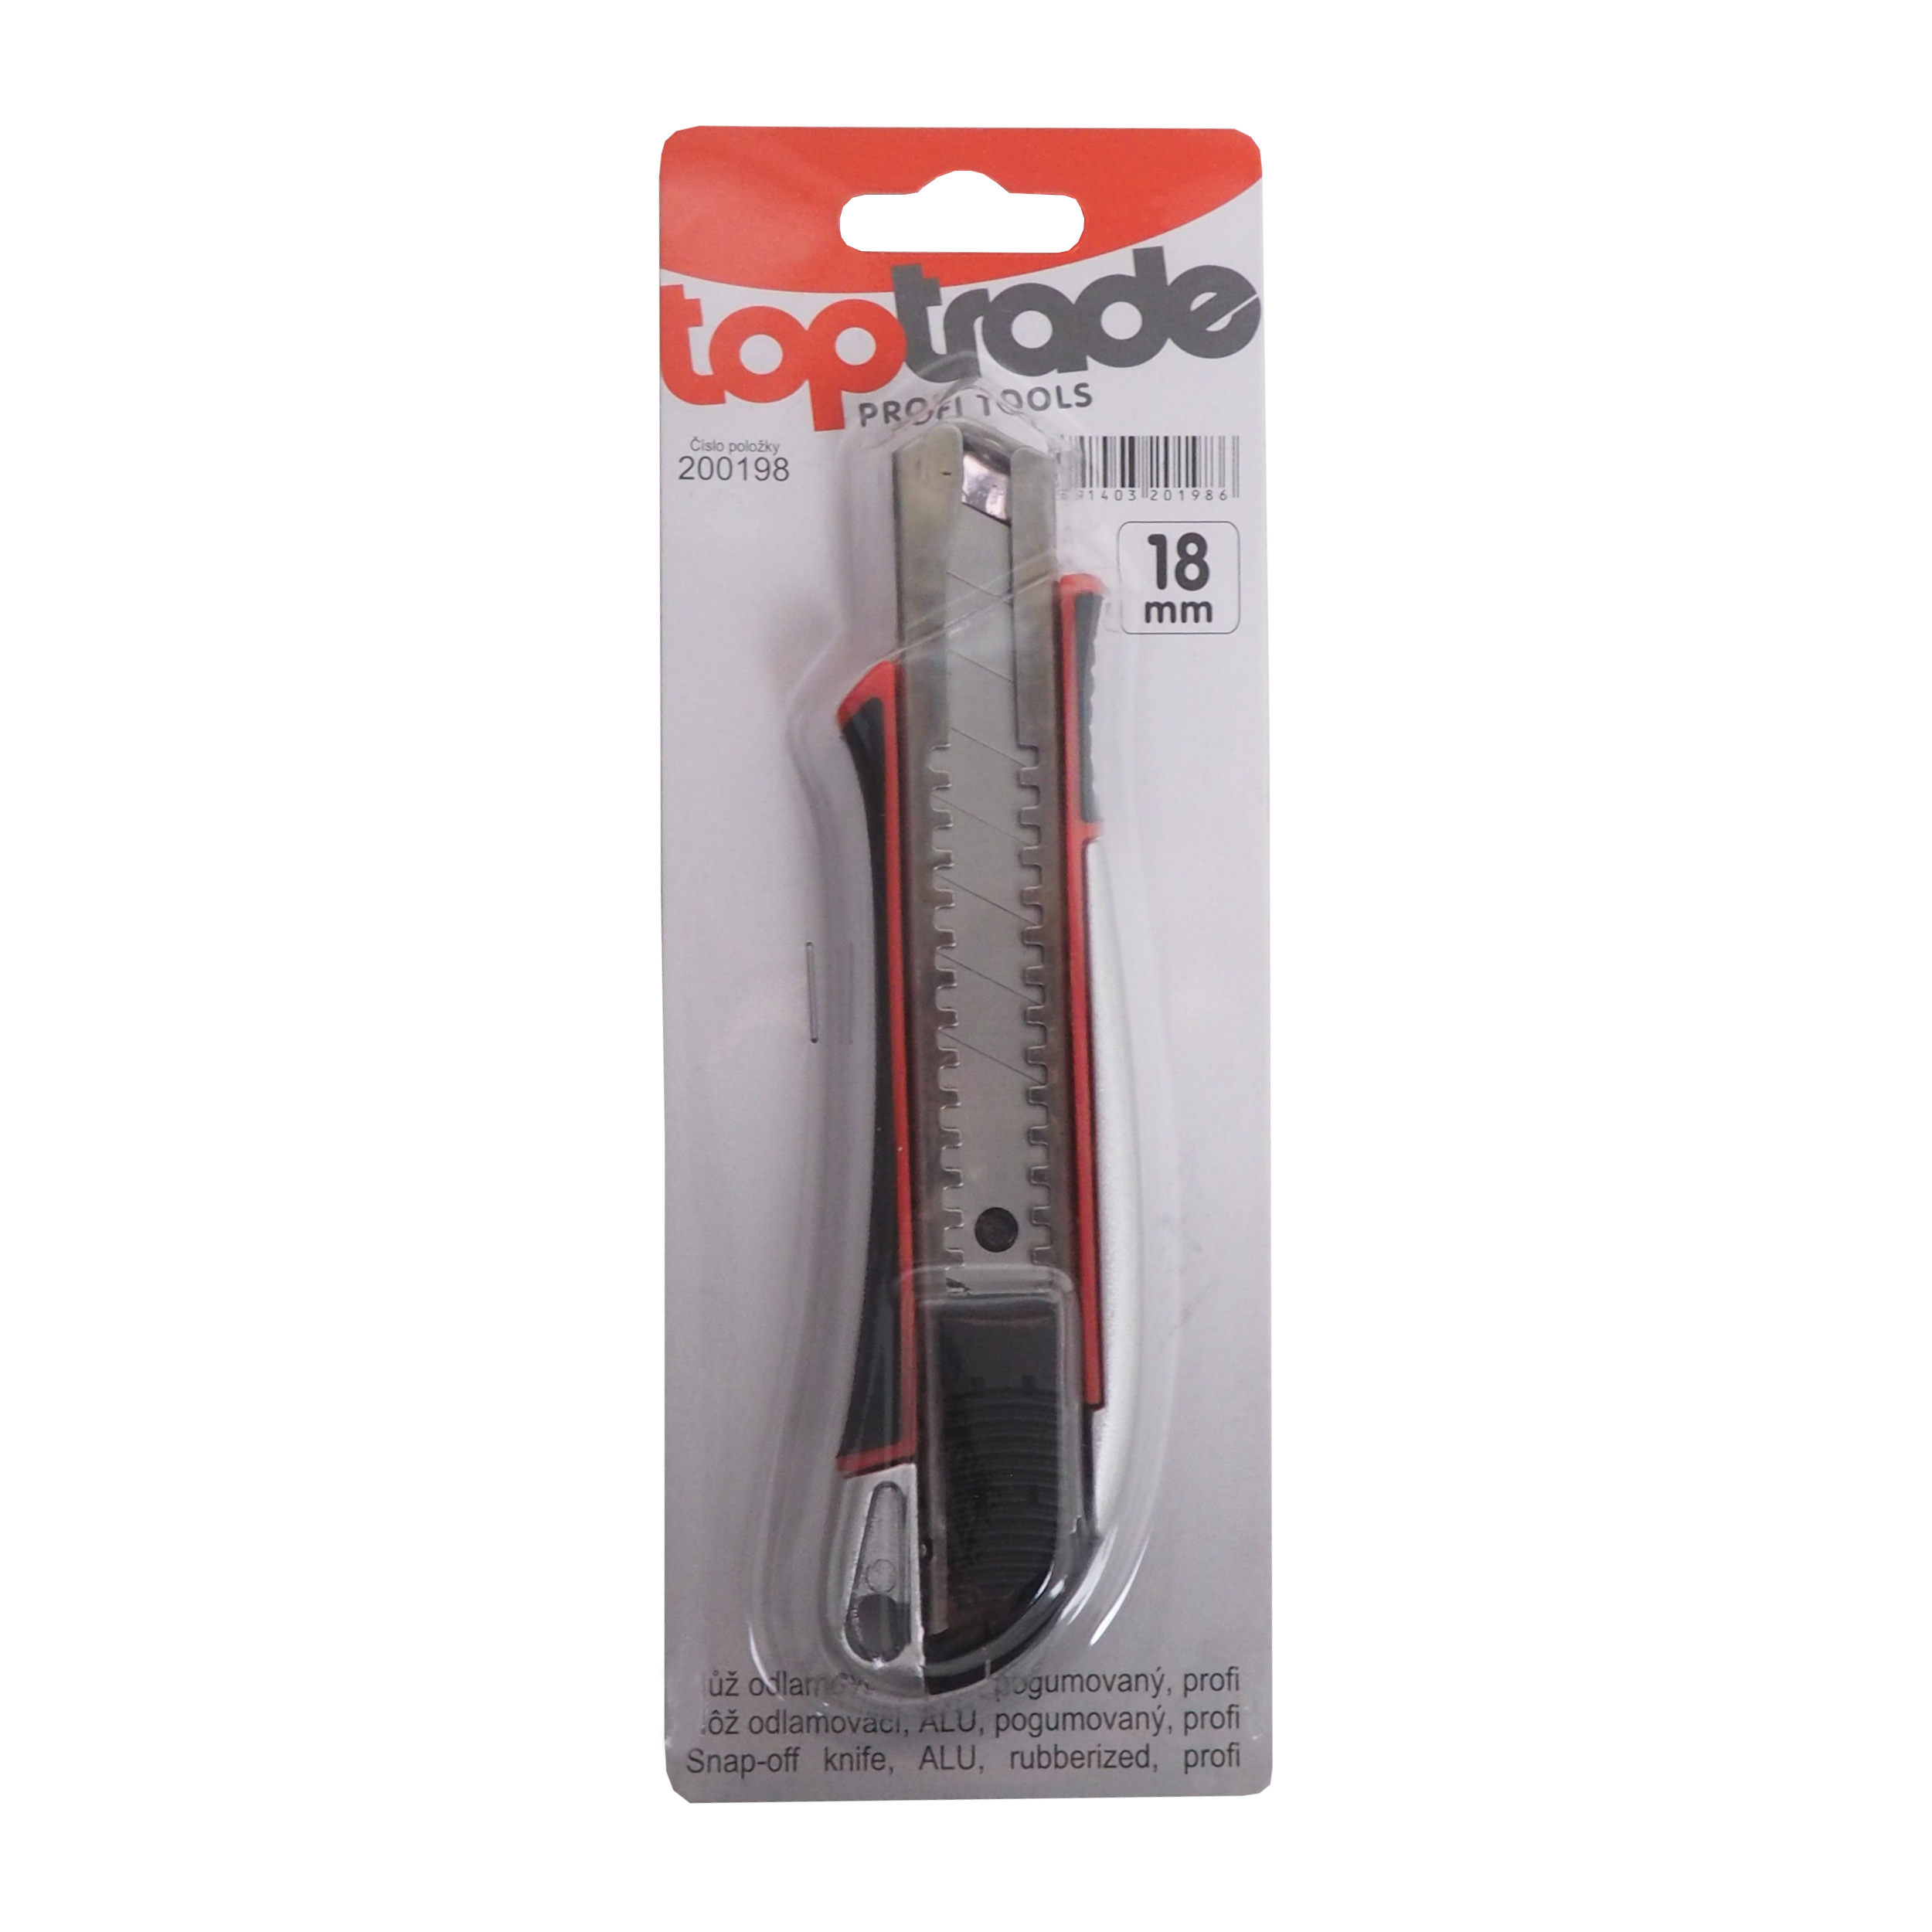 TOPTRADE nůž odlamovací, ALU, pogumovaný, 18 mm, profi 0.11 Kg TOP Sklad4 200198 761